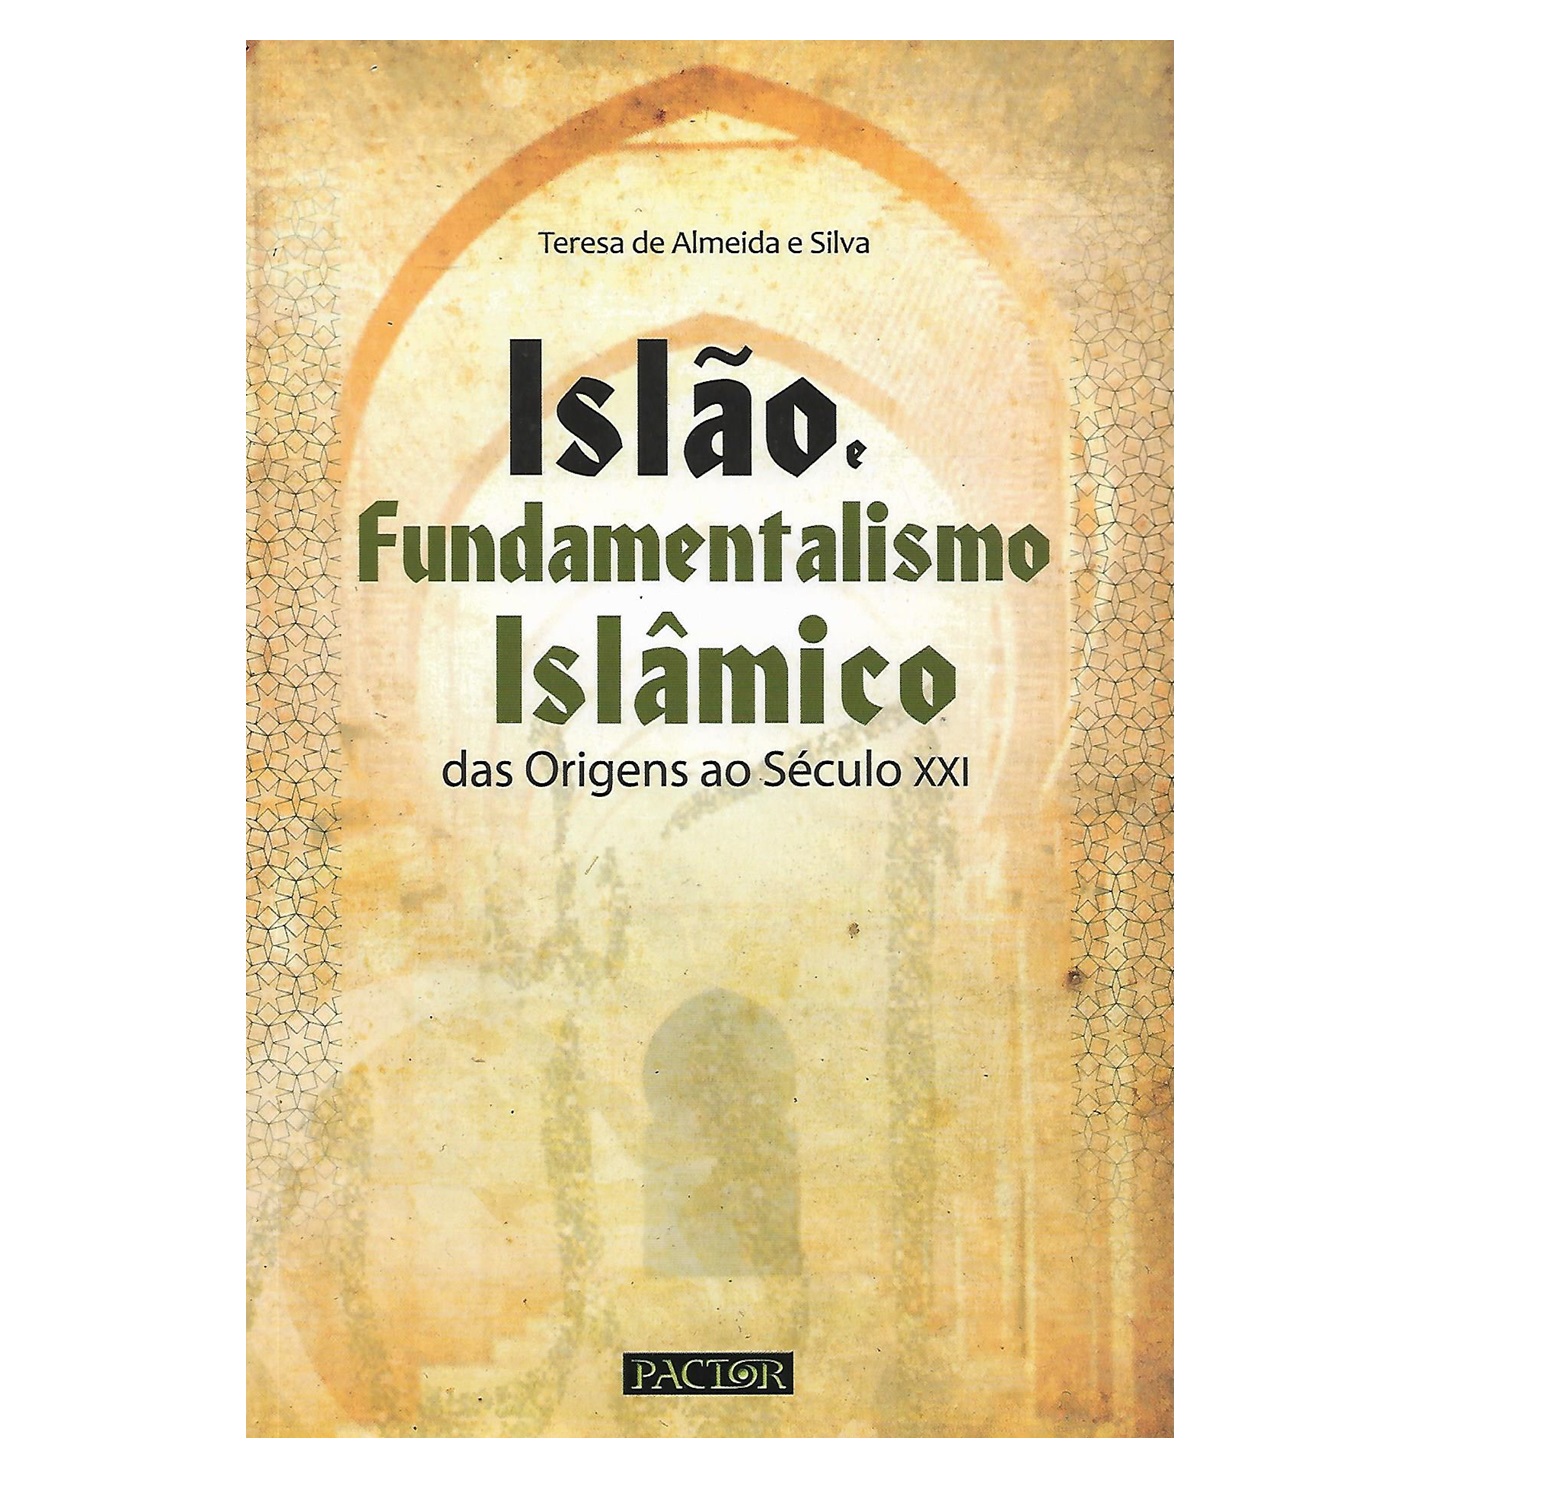 ISLÃO E FUNDAMENTALISMO ISLÂMICO: DAS ORIGENS AO SÉCULO XXI